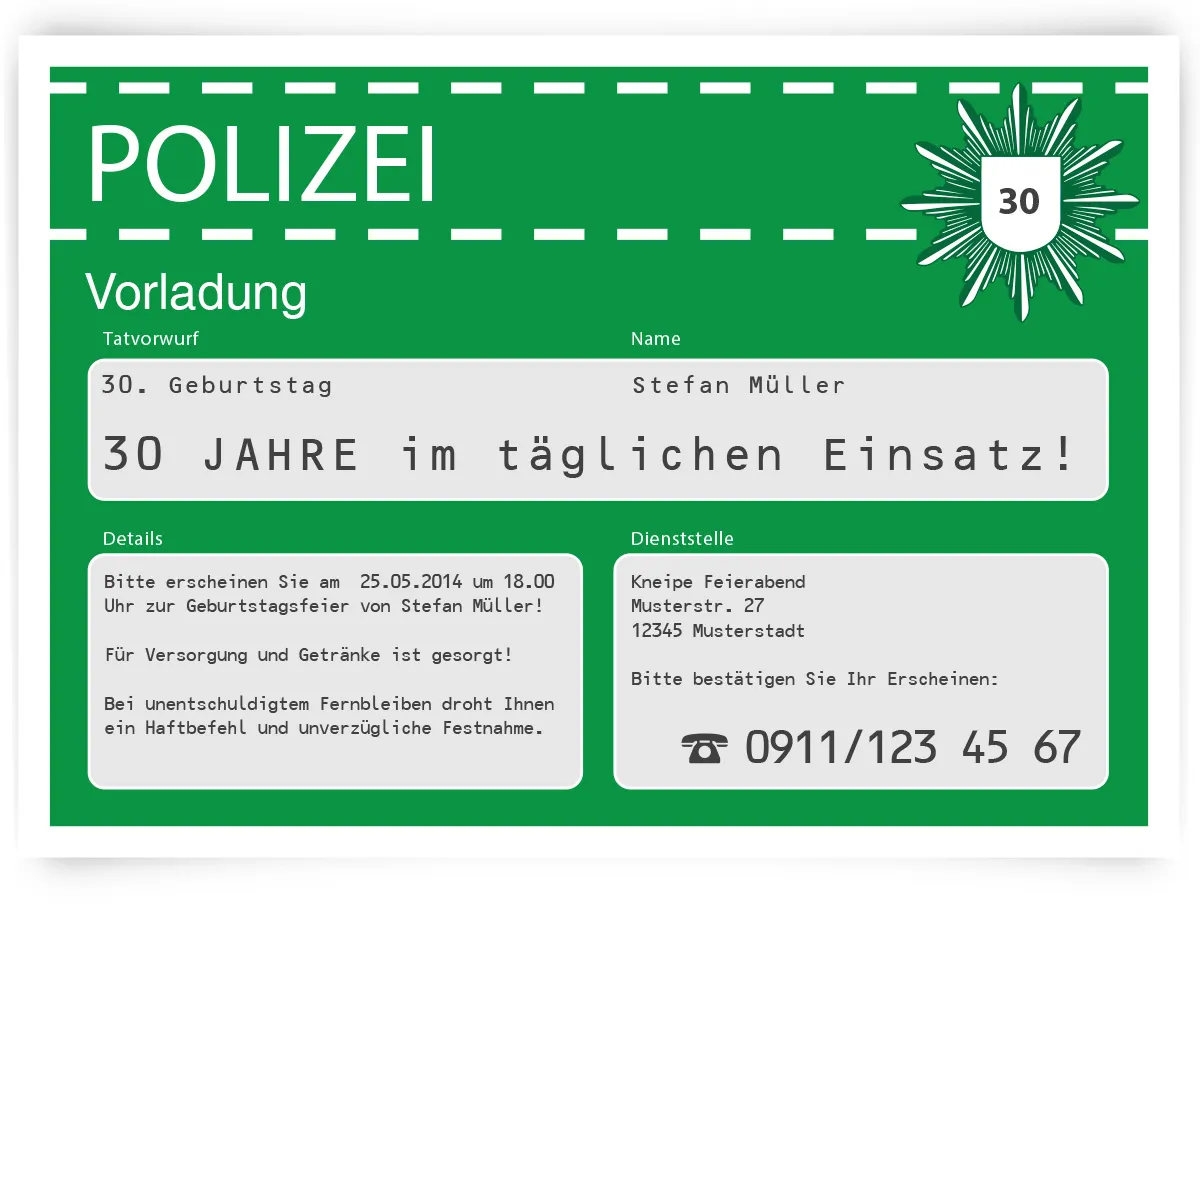 Geburtstag Einladungskarte als Polizeivorladung - Grün